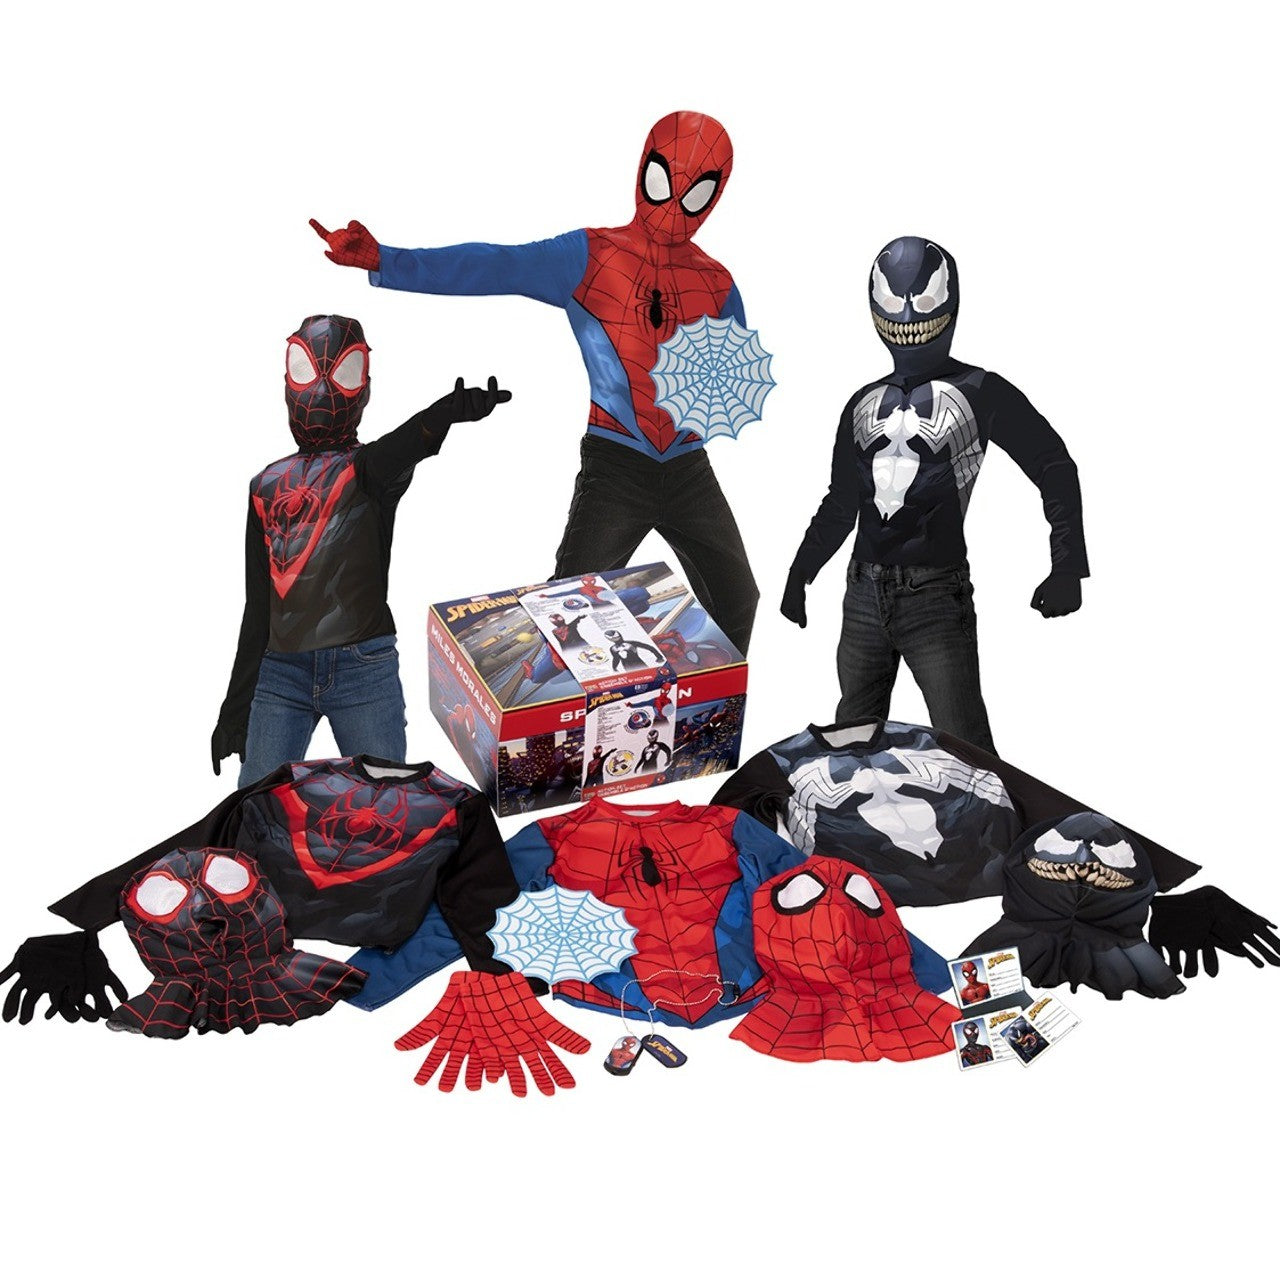 Acquista online scatola di costumi Spiderman™ per bambini con 3 costumi